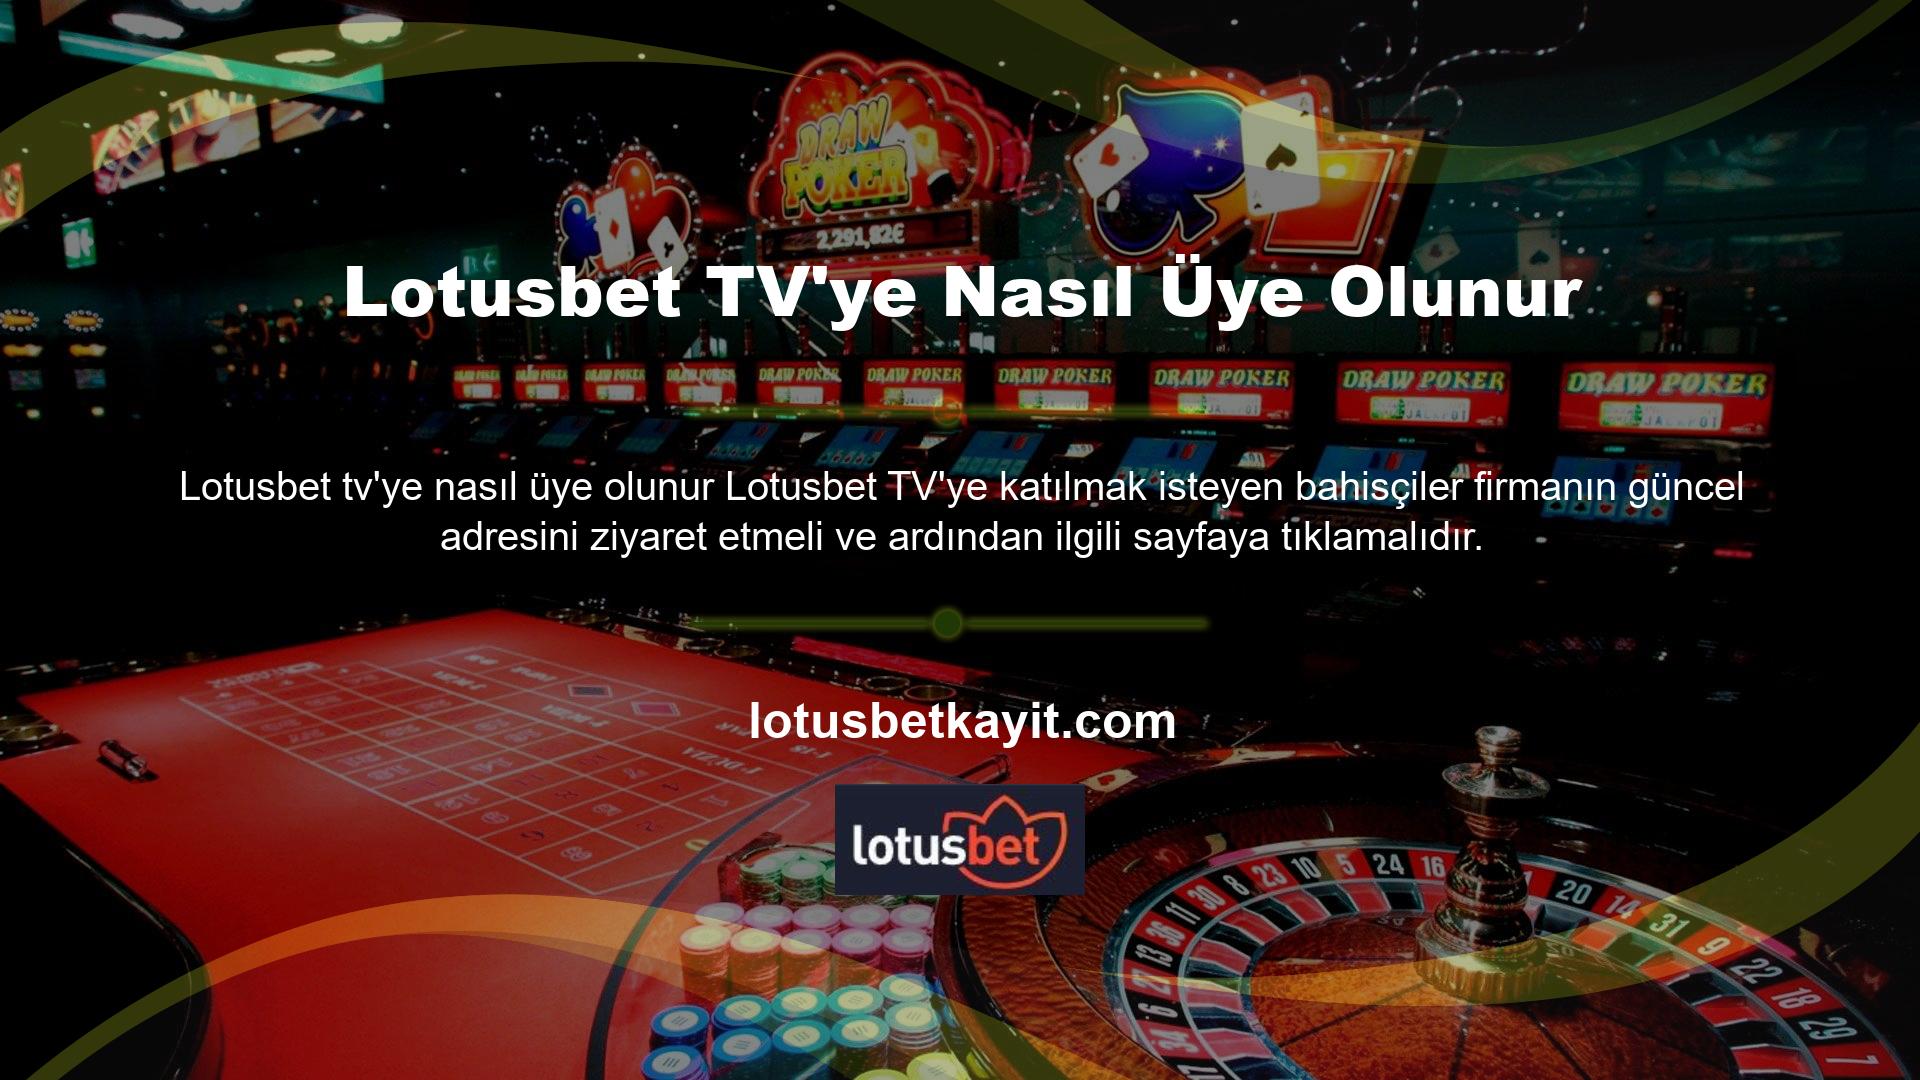 Direkt olarak Lotusbet TV üzerinden bahis oynamak istiyorsanız ilgili kategoriye giderek tüm maçları izleyebilirsiniz